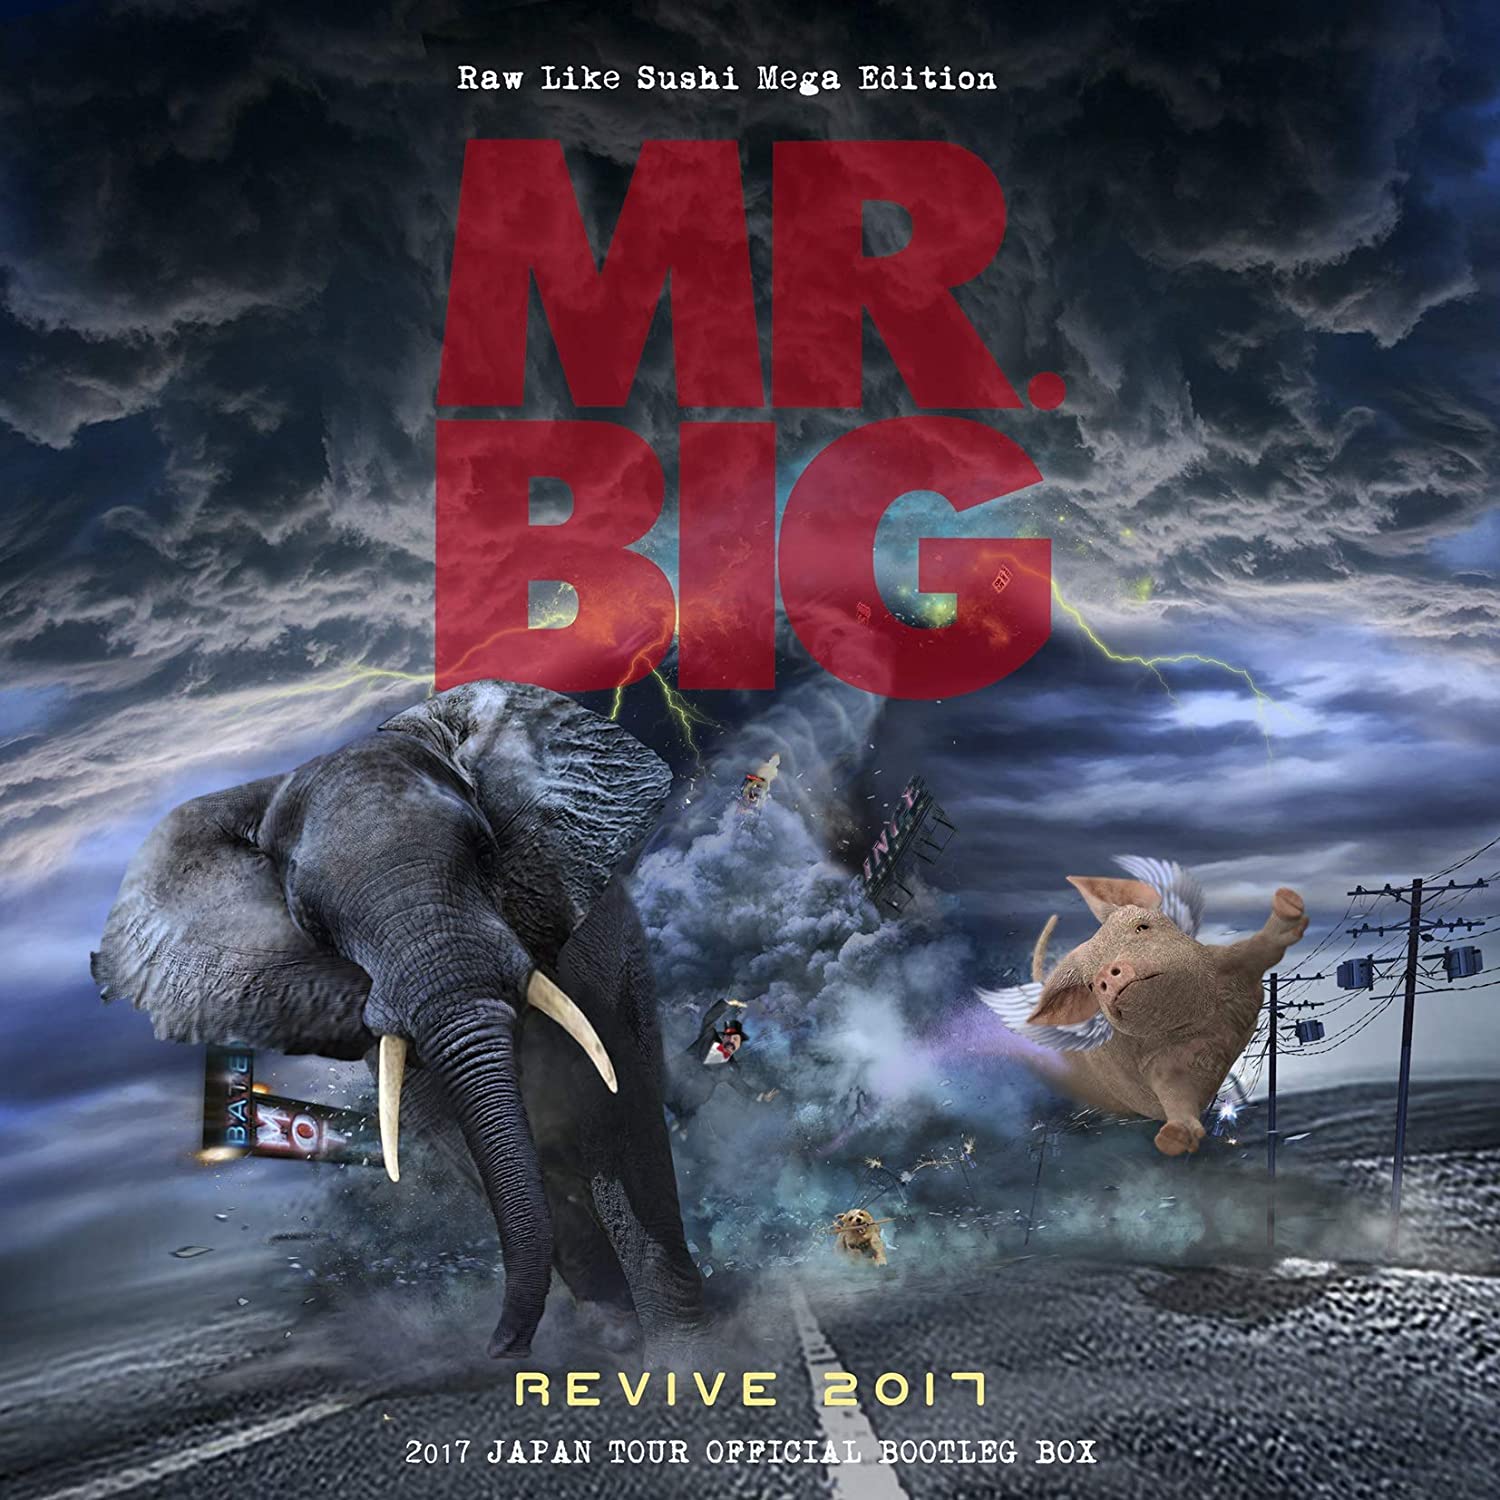 MR.BIG の2017年ジャパンツアー9公演をCD18枚に収録した限定ボックス